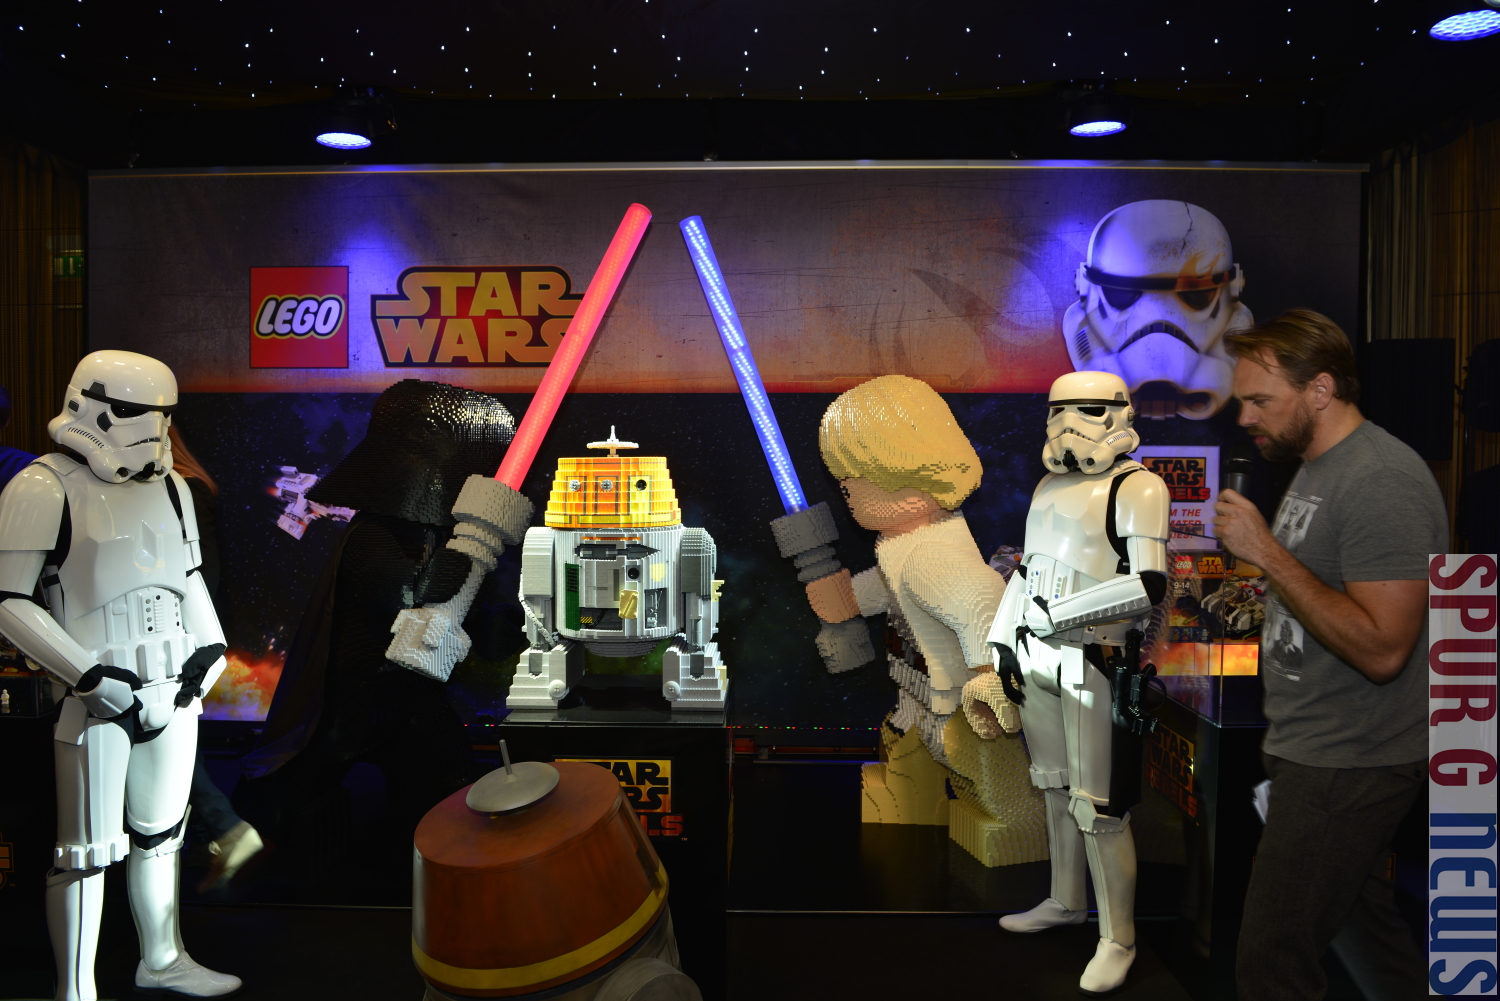 Lego hat fr die StarWars Rebell Serie eine neue Figur als LEGO Modell in einer Weltpremiere vorgestellt. Selbst eingefleischte StarWars Fans aus den USA oder Malaisia waren bei der Pressevorschau dabei. Rechts zwei Stormtrooper mit dem neuen kleinen Roboter und dem Moderator Steven Gtjen.